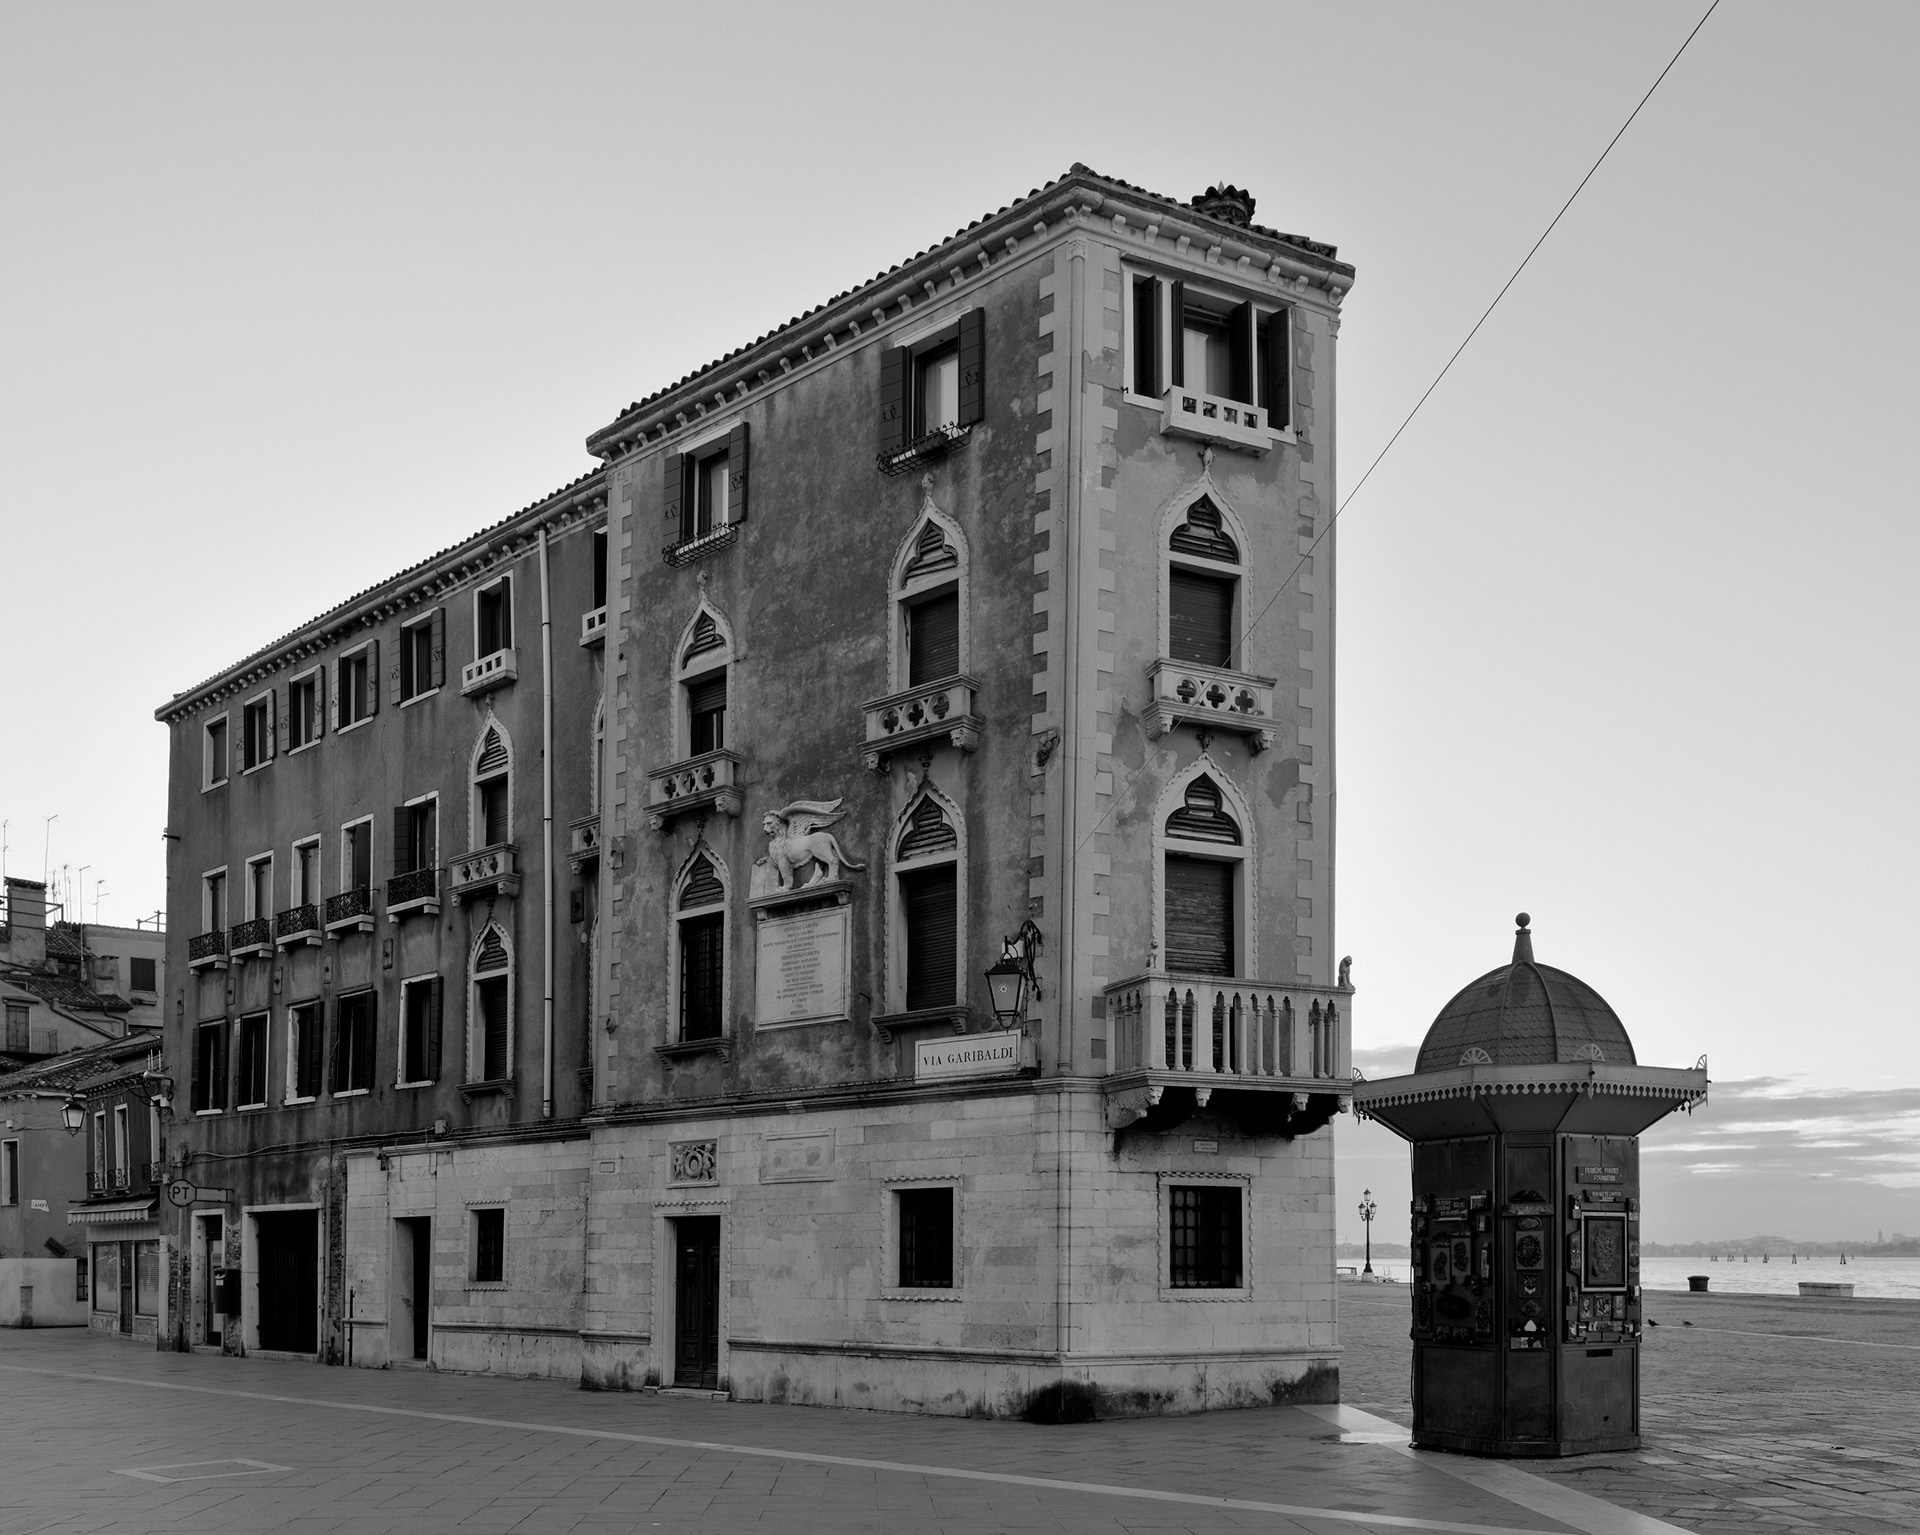 Castello, Via Garibaldi, 2015. Venice Urban Photo Project / Mario Peliti